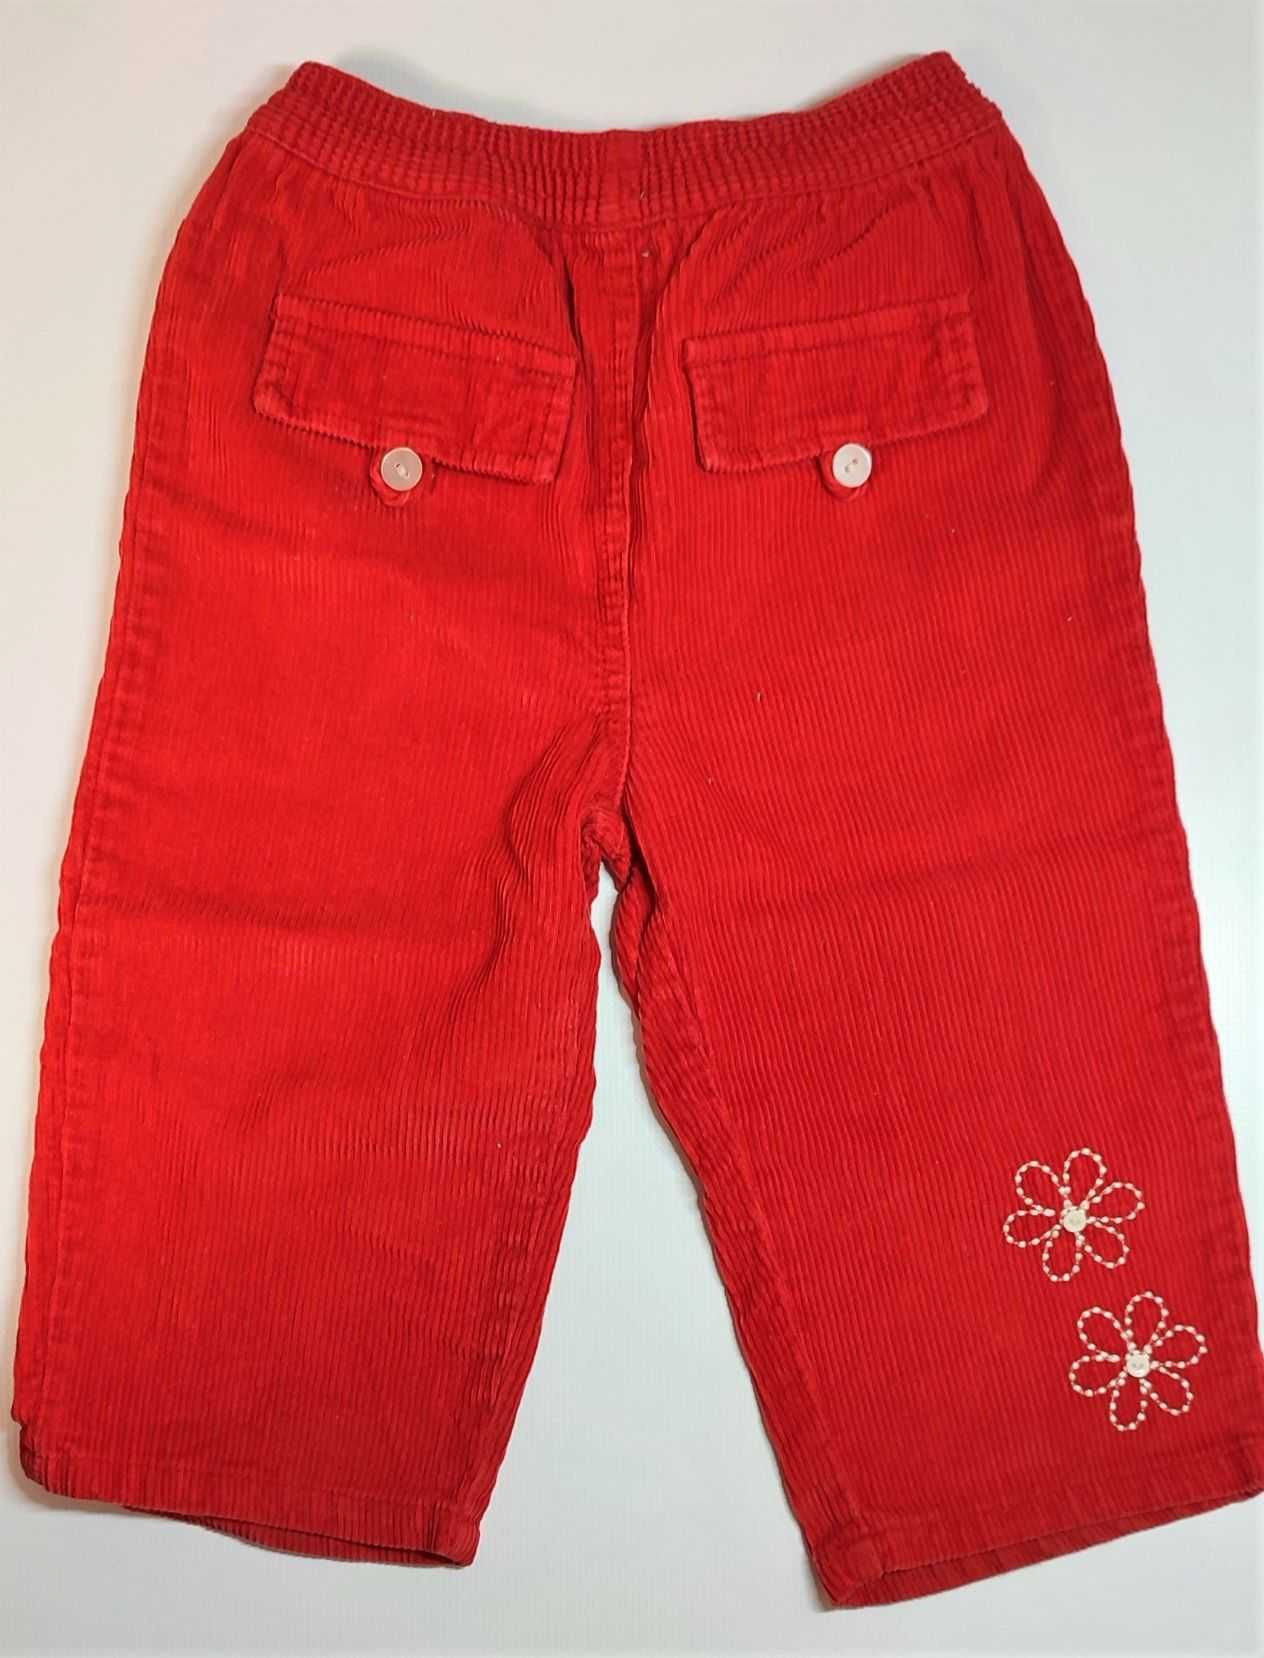 Детские джинсы вельветовые штаны Dirkje на девочку 18-24 мес